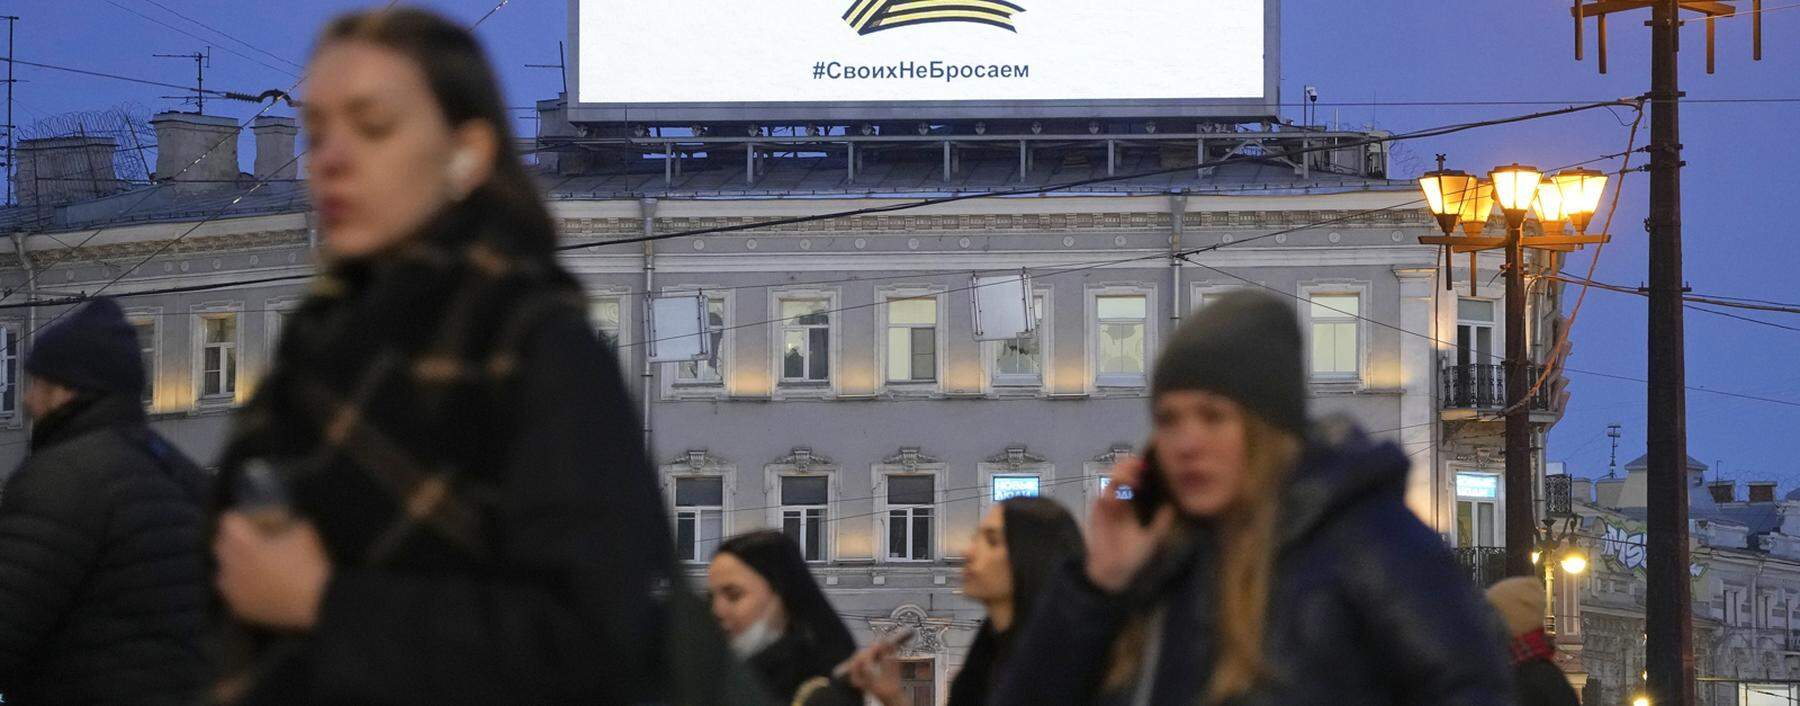 Ein Werbebanner in St. Petersburg: Der Buchstabe Z ist Symbol für die russische Armee, darunter steht „Wir verlassen nicht das Unsere“. Doch immer mehr Russen wollen nichts wie weg.